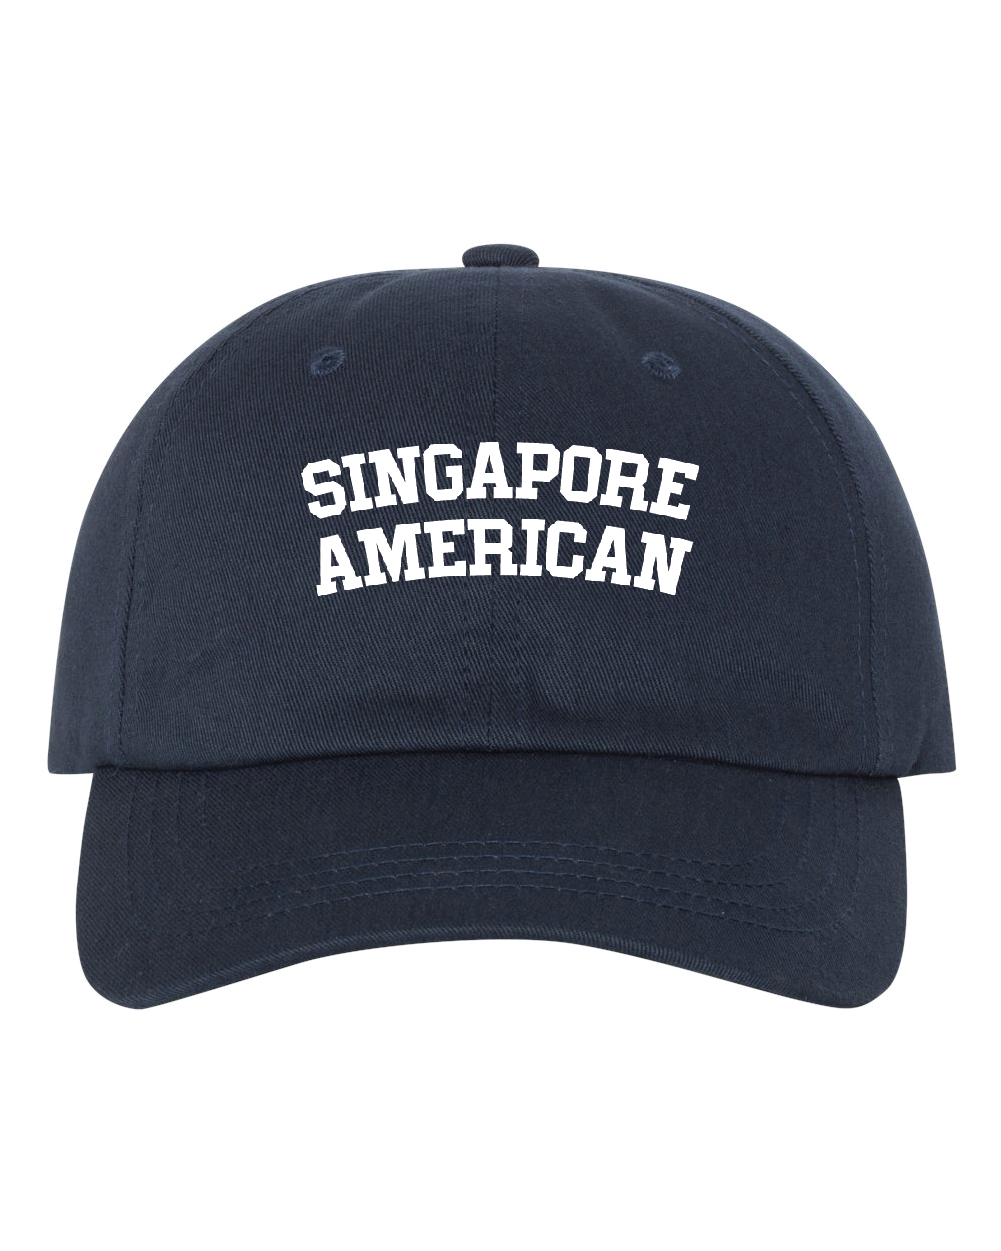 Singapore American Cotton "Dad" Cap